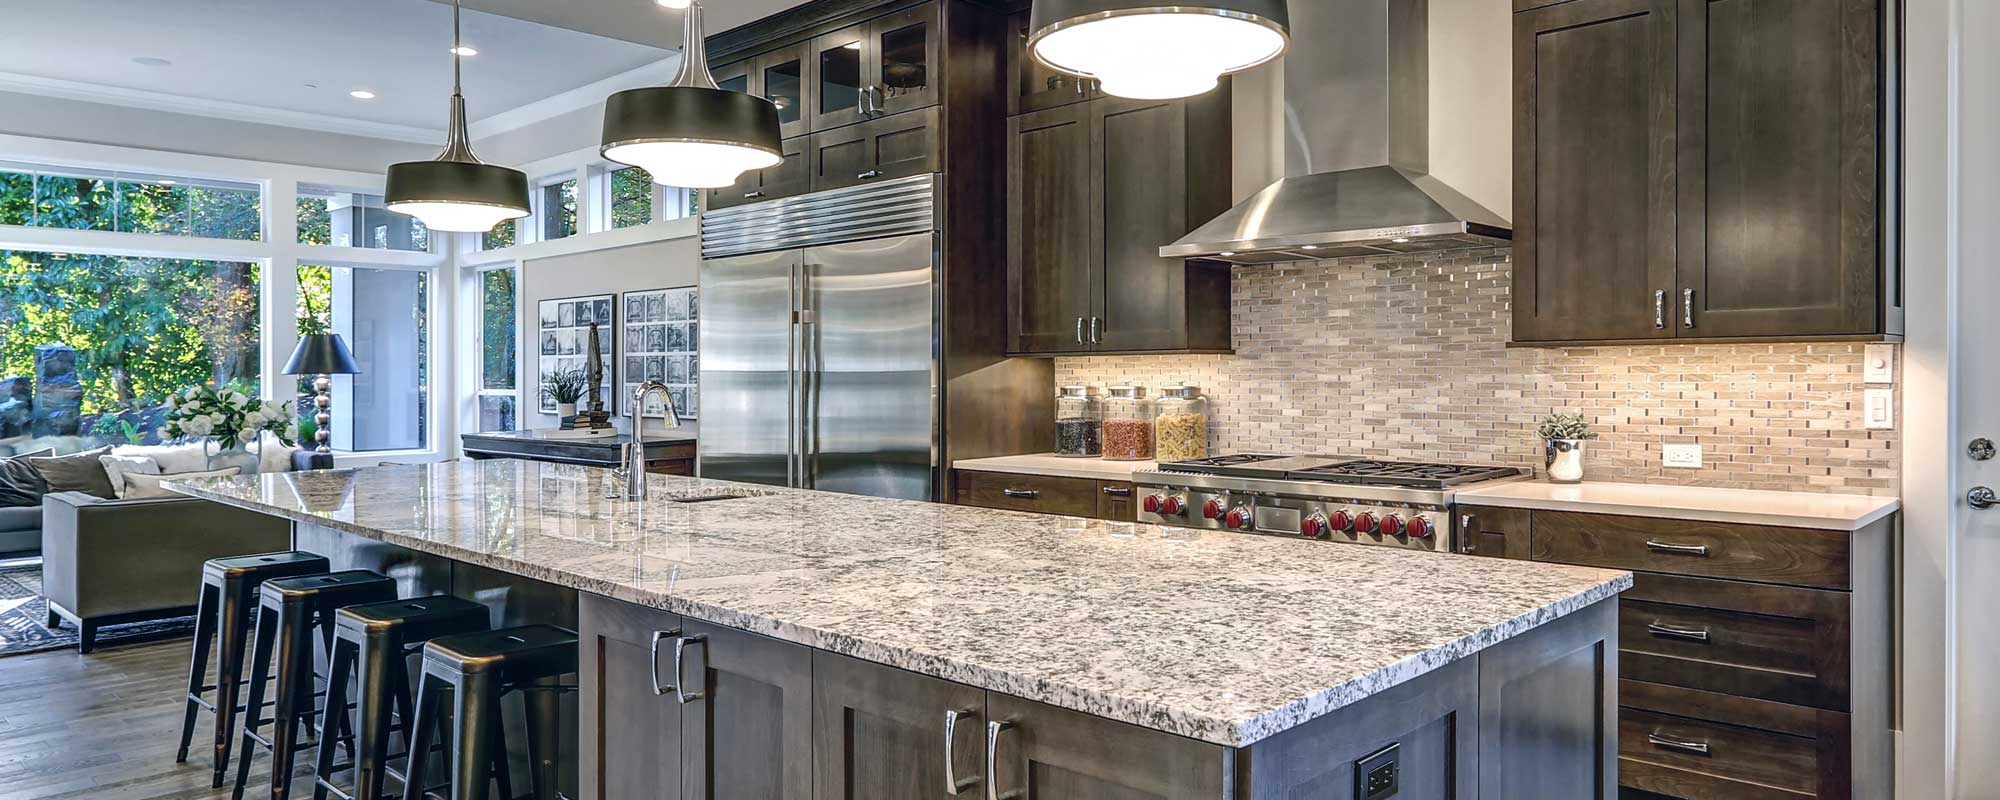 Prostone Granite Cabinetry Kitchen Greensboro Nc